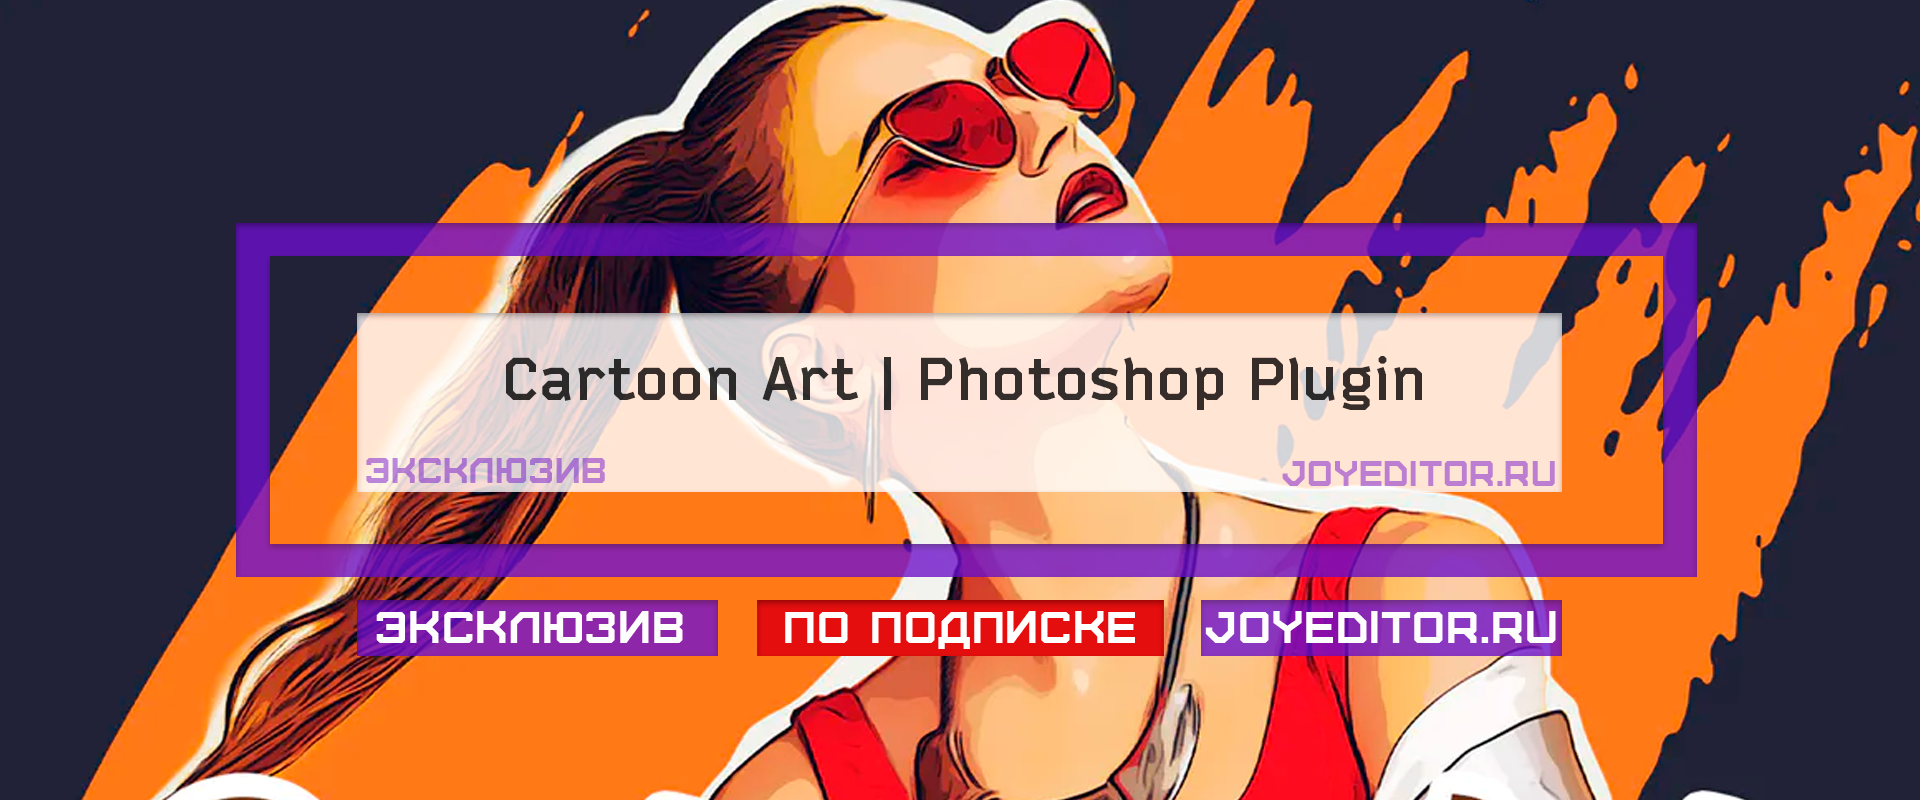 Cartoon Art | Photoshop Plugin – Скачать бесплатно